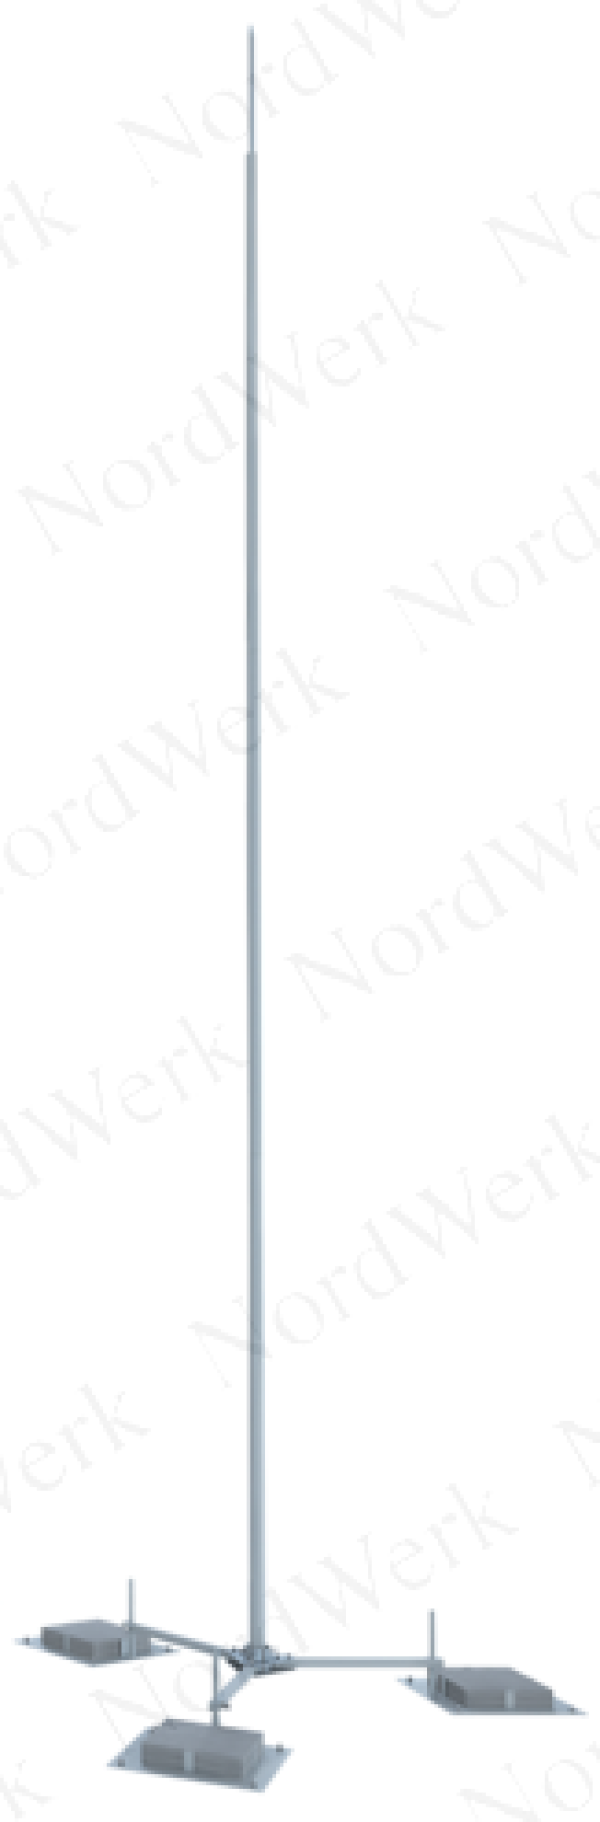 NordWerk МСАП-М-1,8-Т – Молниеотвод высотой 1,8 метров (алюминий; с треногой)